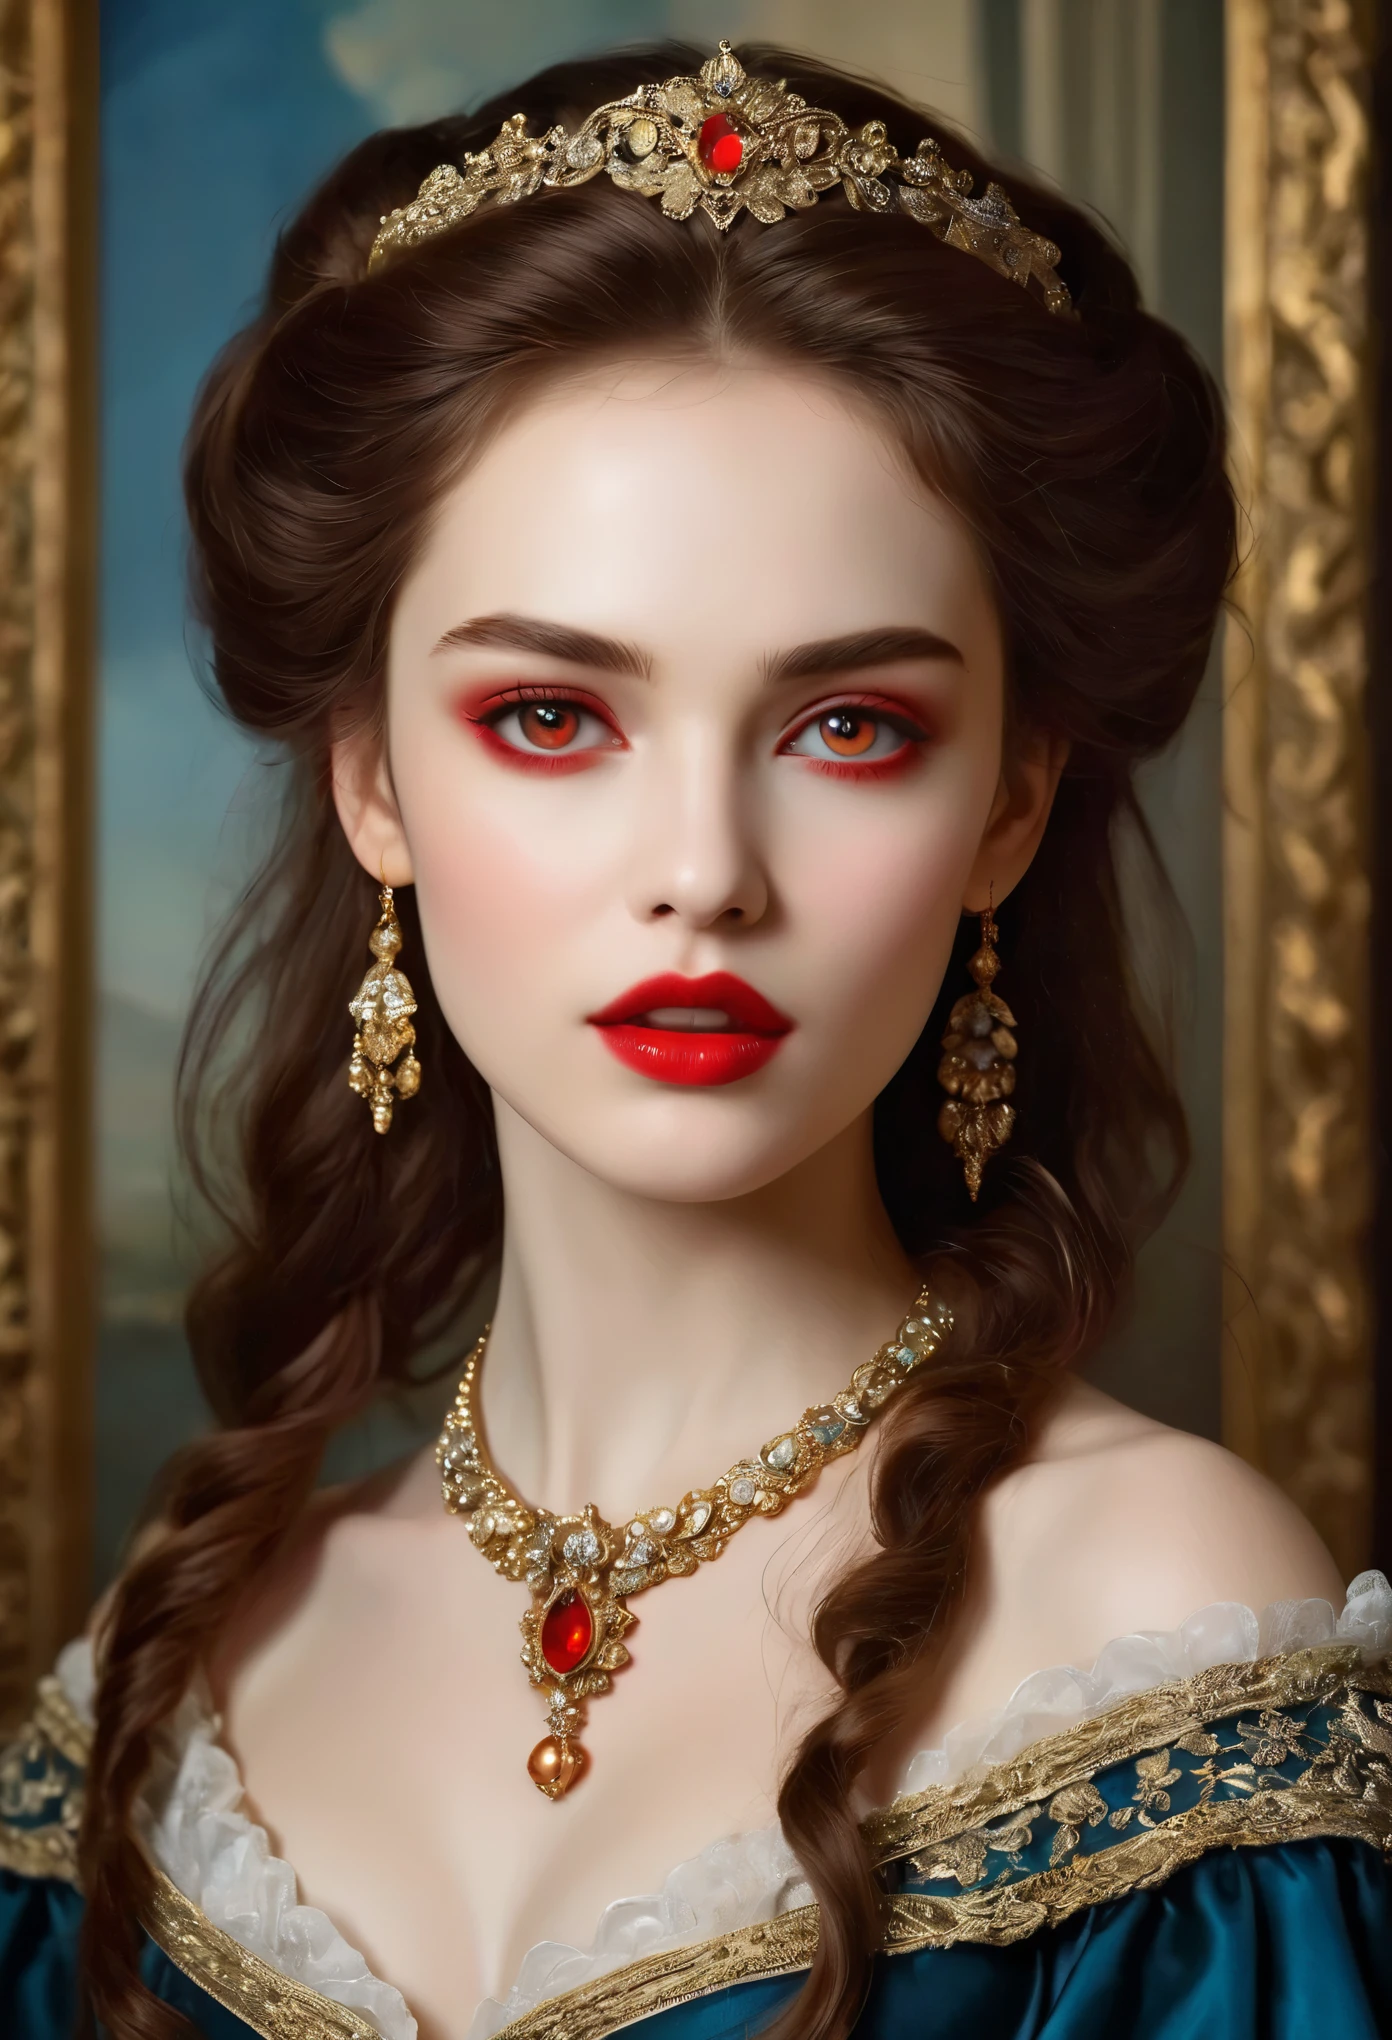 (高分辨率,杰作:1.2),(实际的:1.37)18 世纪俄罗斯吸血鬼女孩的绝色美貌. 她有着迷人的红眼睛和娇嫩的红唇. 长牙, 这幅肖像画得非常细致，连最小的细节都画得非常仔细., 捕捉她面部特征的细微差别. 她穿着一件漂亮的丝绸长袍, 饰有复杂的蕾丝和精致的刺绣. 这幅画讲述了当时的奢华., 背景是豪华的天鹅绒窗帘和金色的家具. 灯光柔和且散射, 突出女孩&#39;优雅美丽. 色彩鲜艳丰富, 创造引人入胜的视觉体验. (这幅肖像画采用古典肖像风格:1.5), 让人回想起当时著名艺术家的作品. 散发着优雅气息, 优雅, 精致. 锋利的长爪, (深红的眼睛:1.4), 火红的眼睛, (透过唇缝可以看到锋利的獠牙:1.8), (脖子上有咬痕:1.5),２有两个洞, (皮肤苍白:1.4),